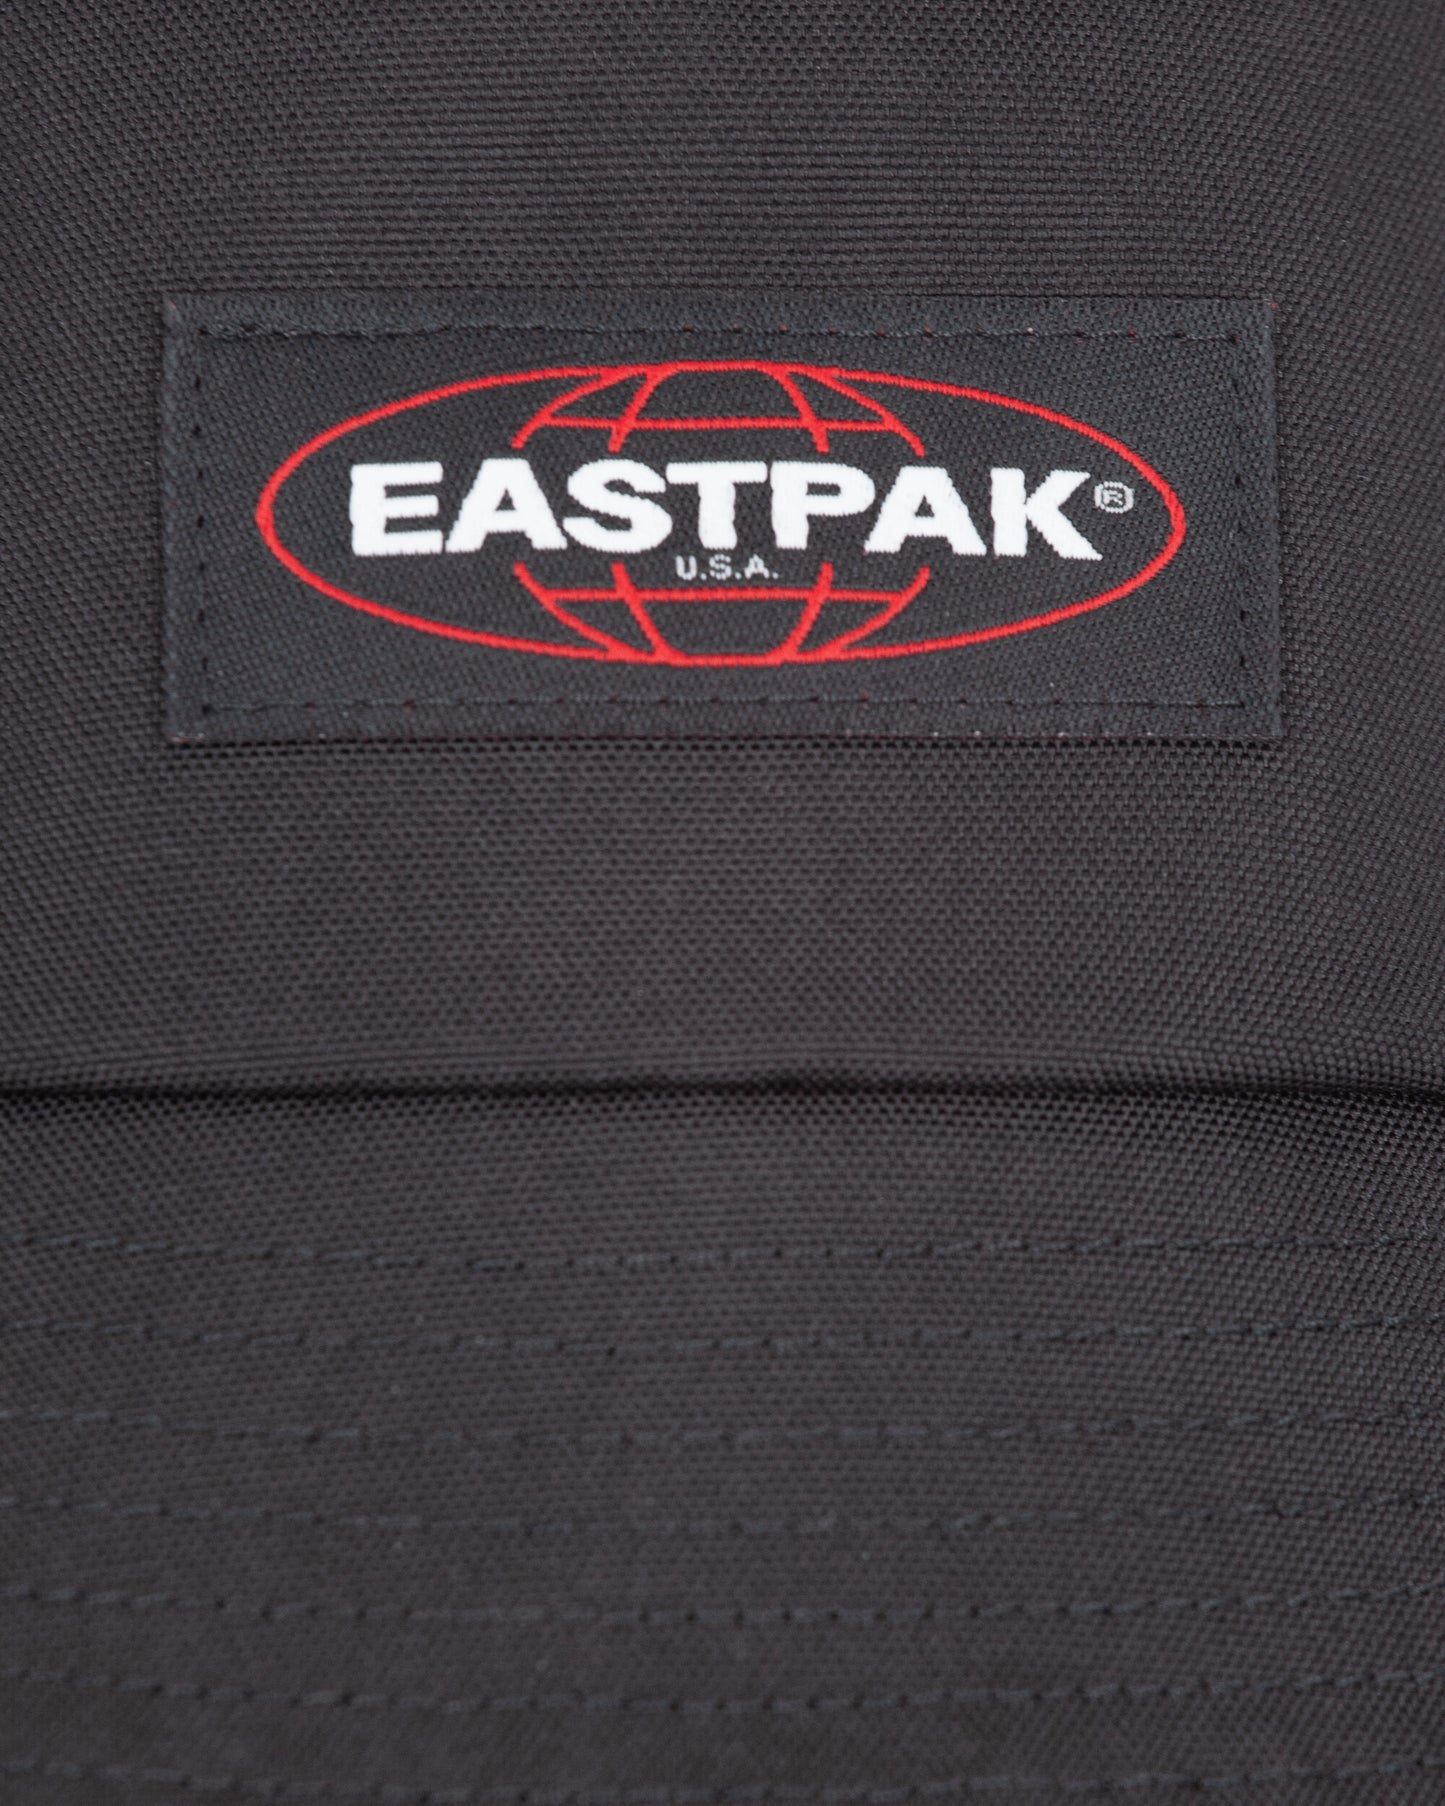 Eastpak Pleasures Bucket Crossbody Embroidery Black Bags and Backpacks Shoulder Bags EK0A5BH23J71 001